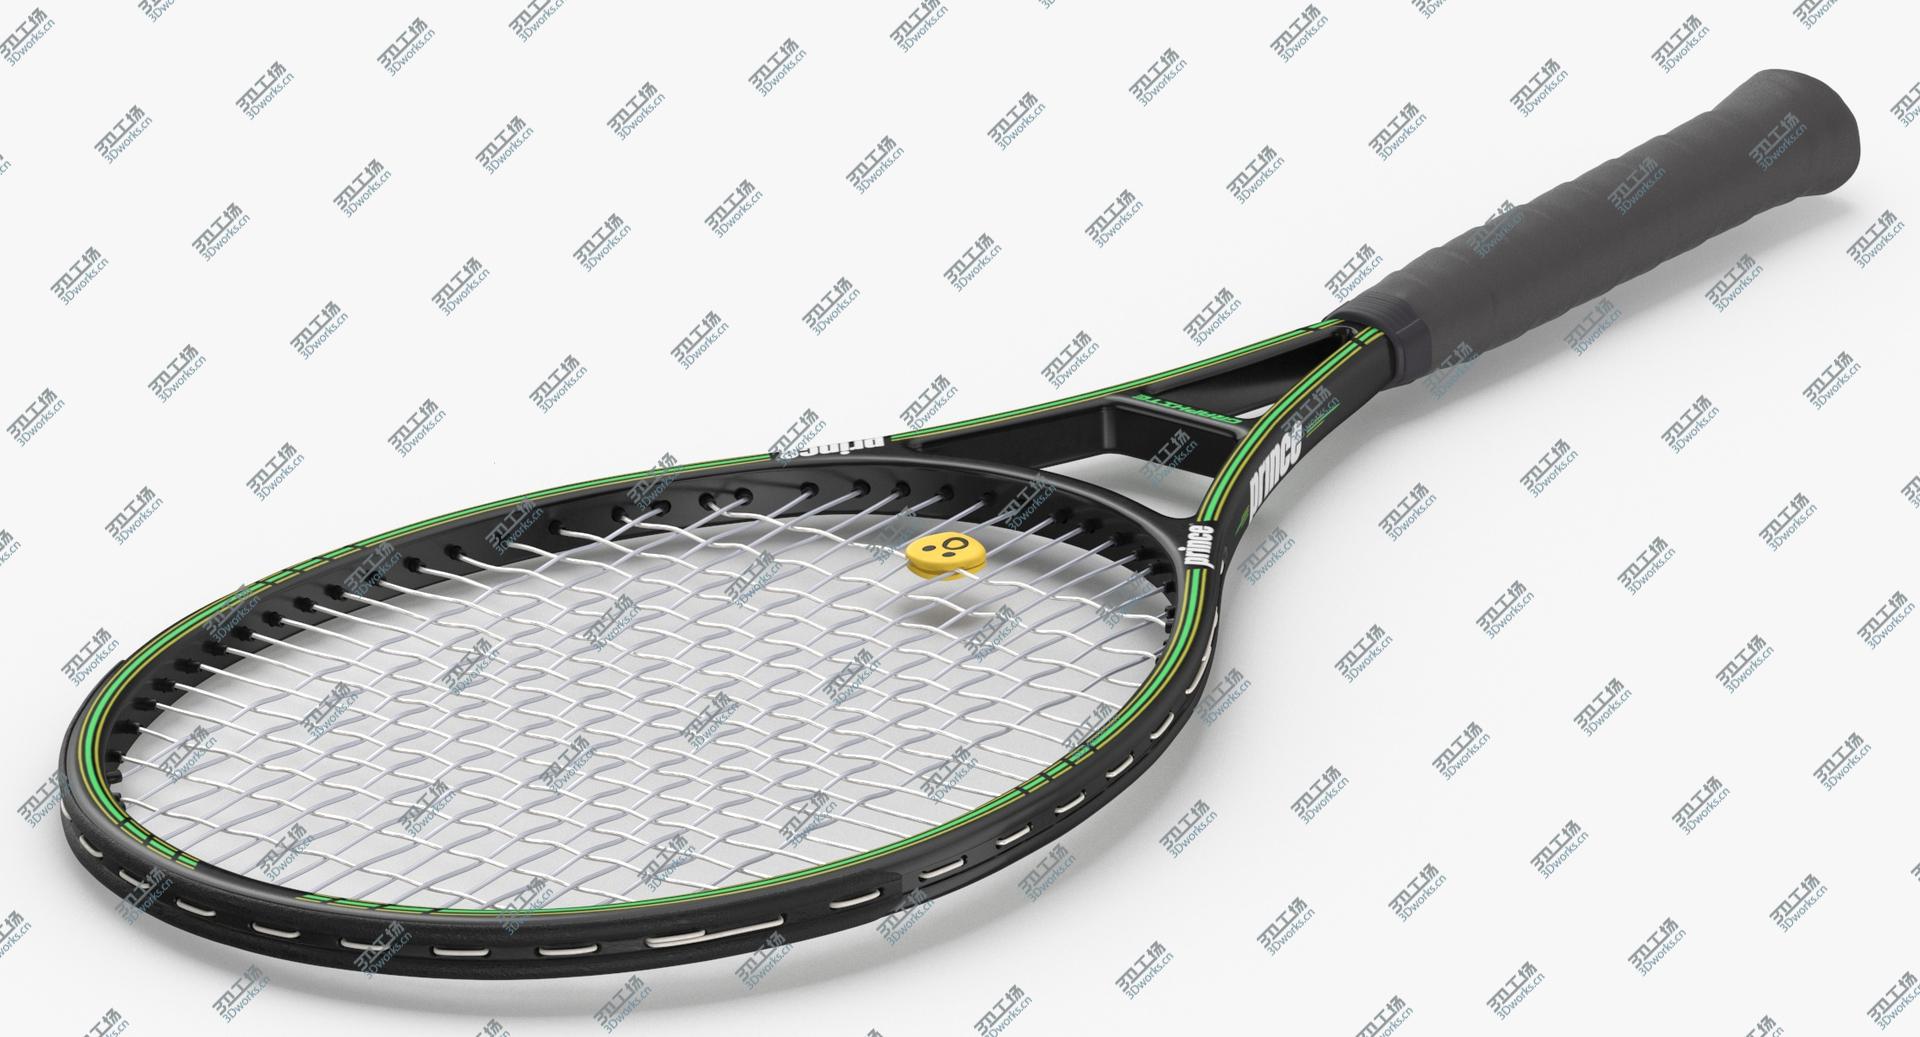 images/goods_img/2021040234/3D Tennis Racket model/5.jpg